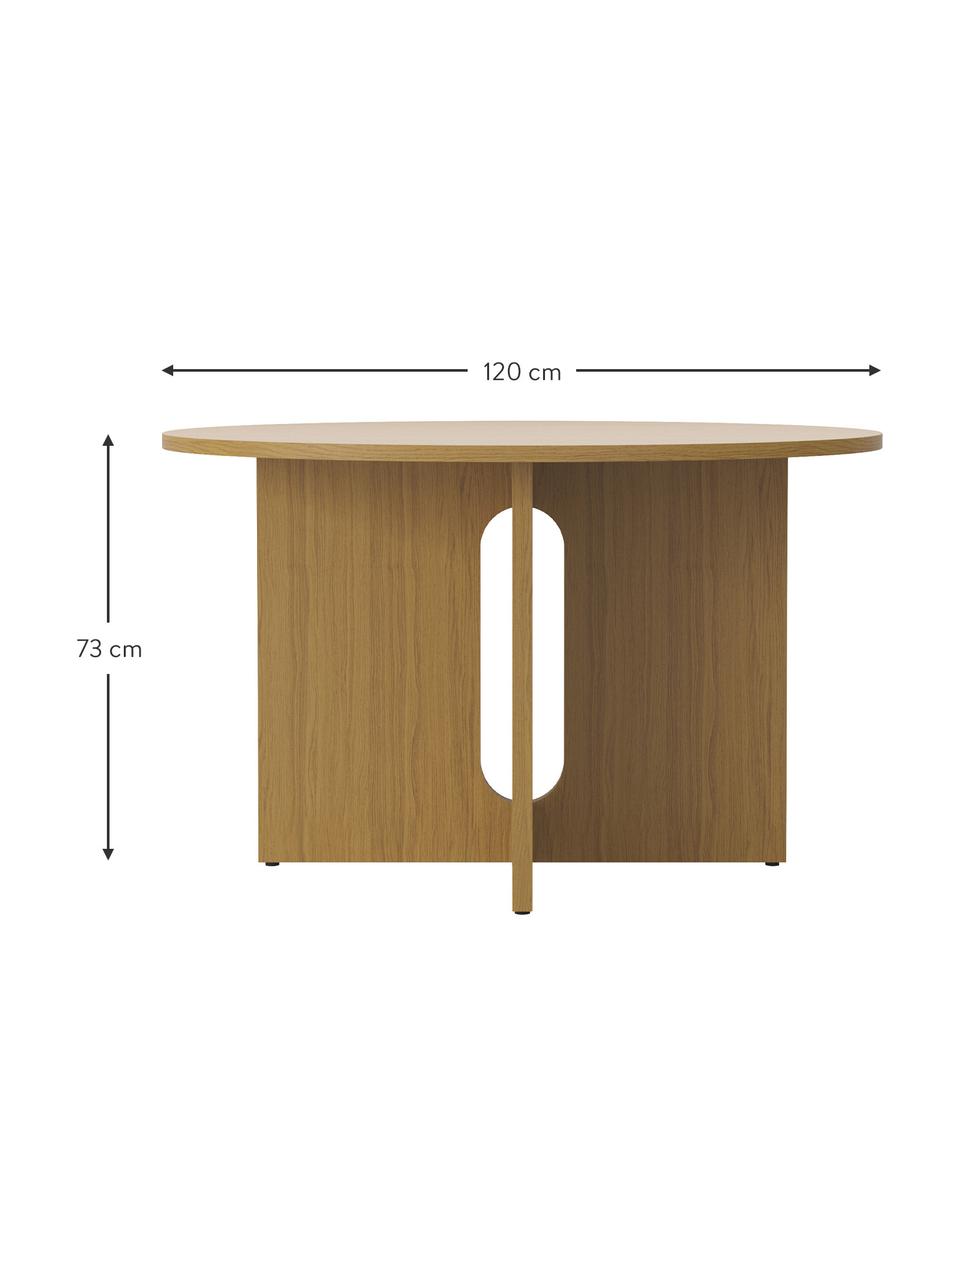 Kulatý jídelní stůl s dubovou dýhou Androgyne, různé velikosti, MDF deska (dřevovláknitá deska střední hustoty) s dubovou dýhou, Světle hnědá, Ø 120 cm, V 73 cm